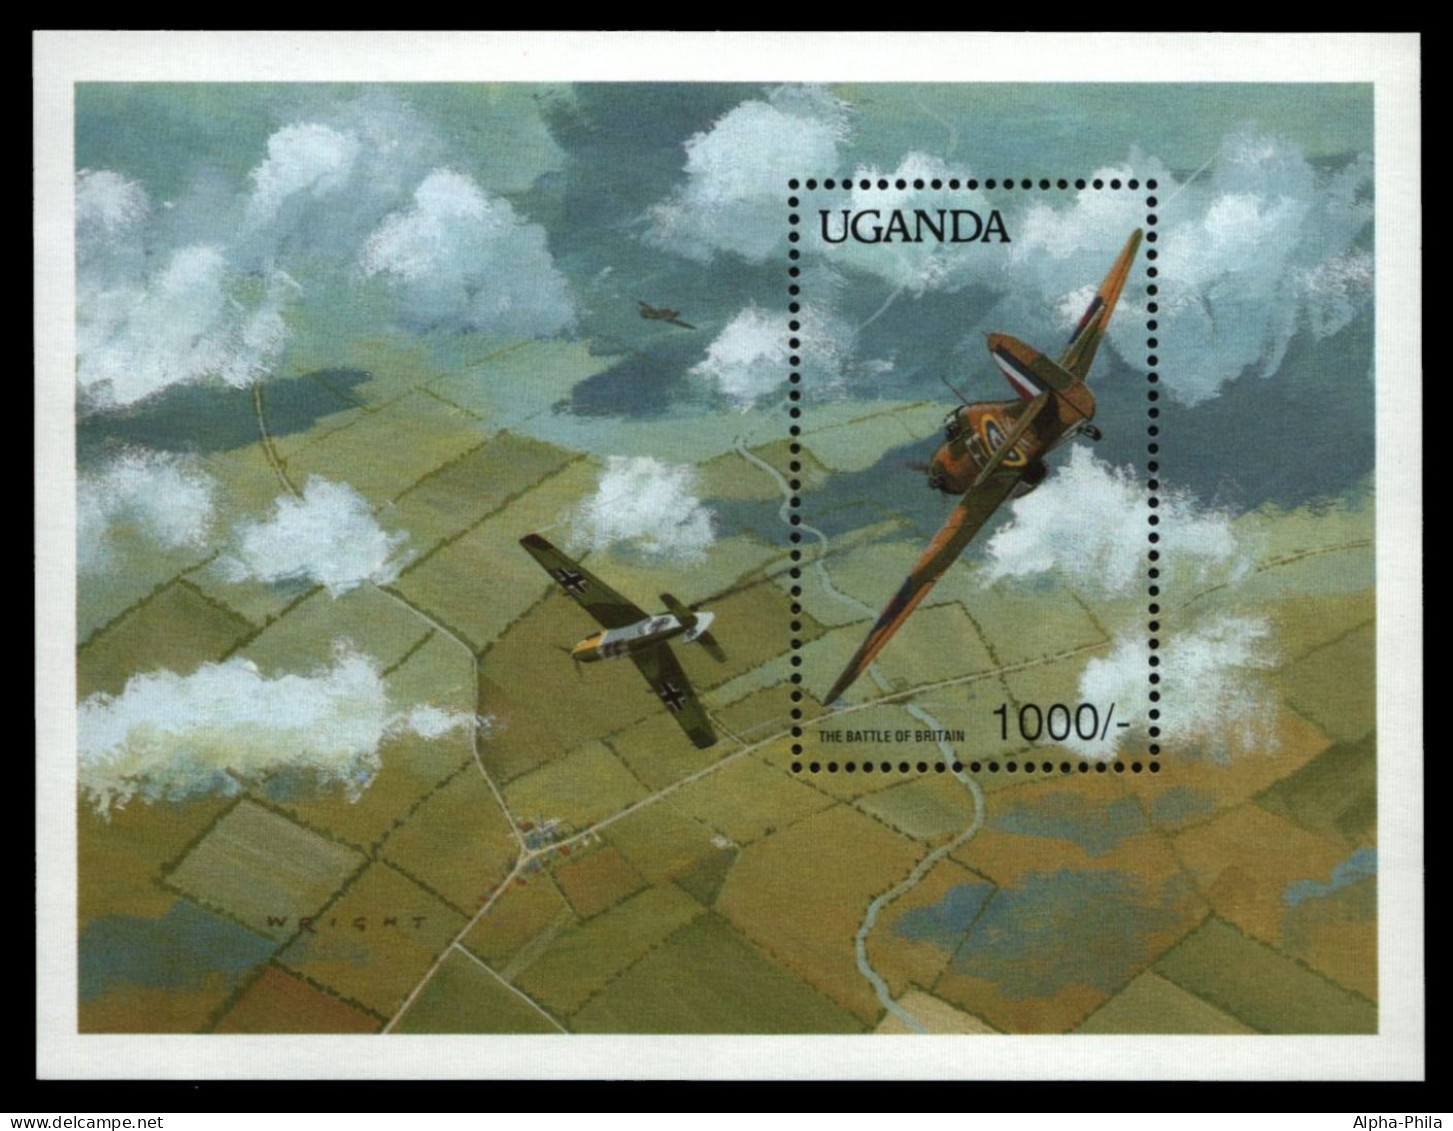 Uganda 1990 - Mi-Nr. Block 111 ** - MNH - Flugzeuge / Airplanes - Ouganda (1962-...)